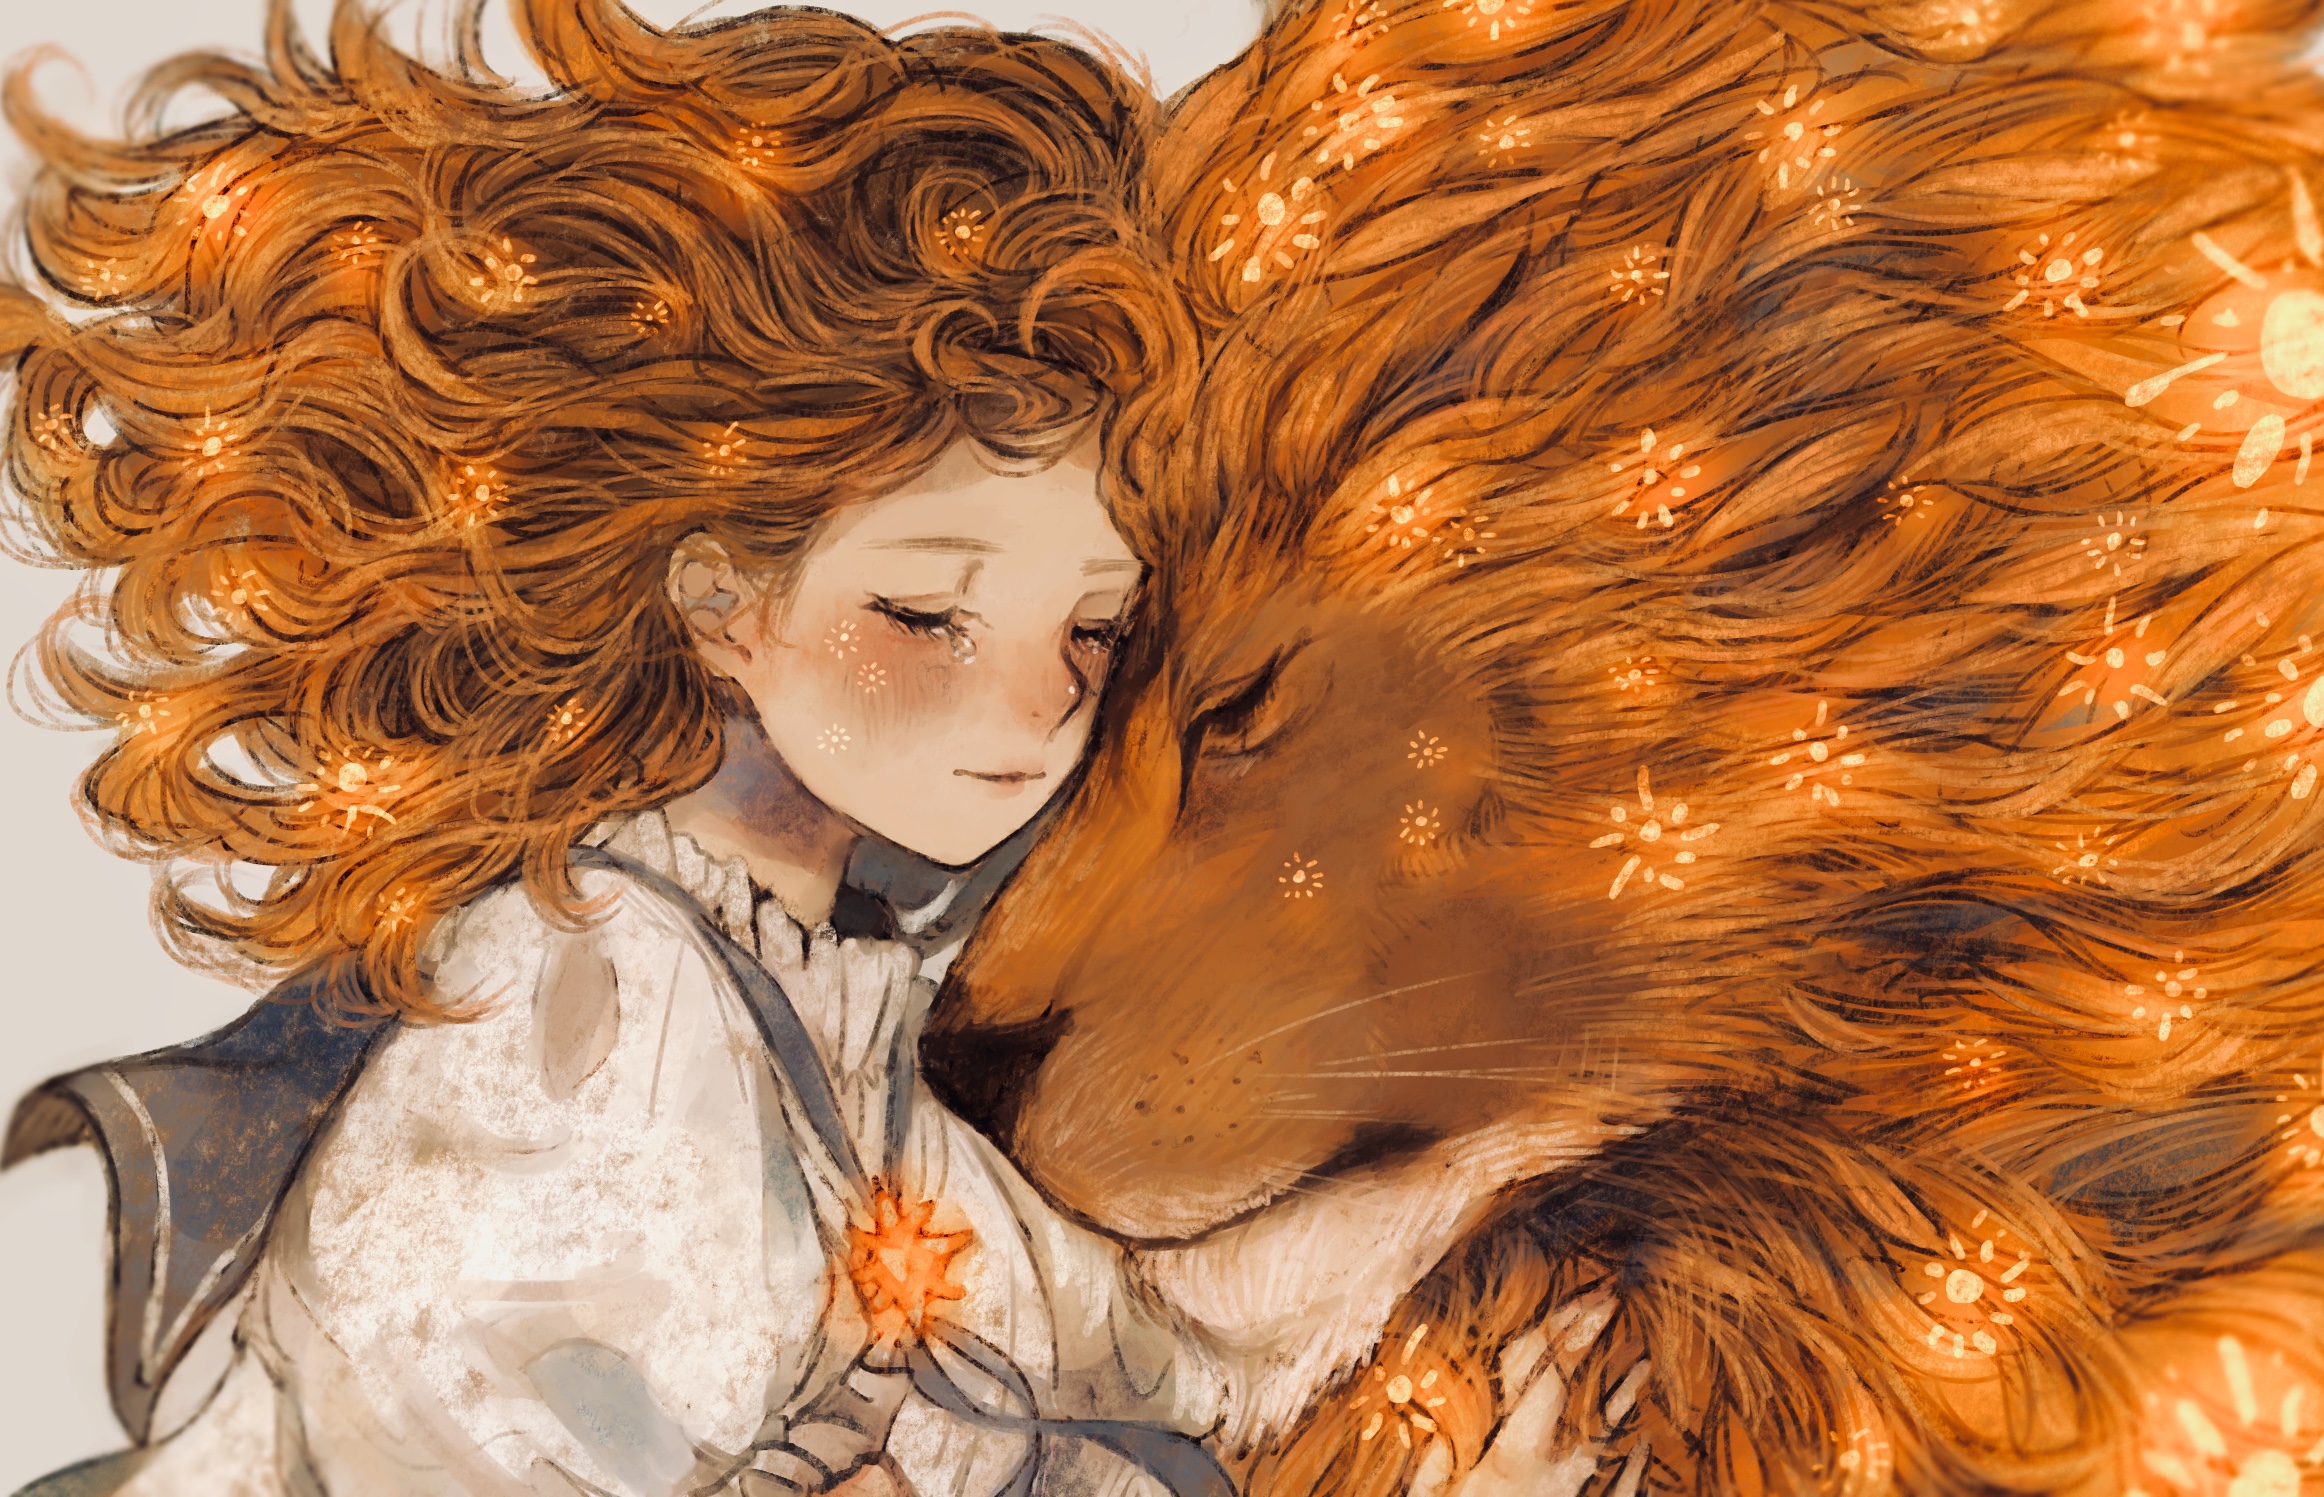 Рыжая девушка со львом